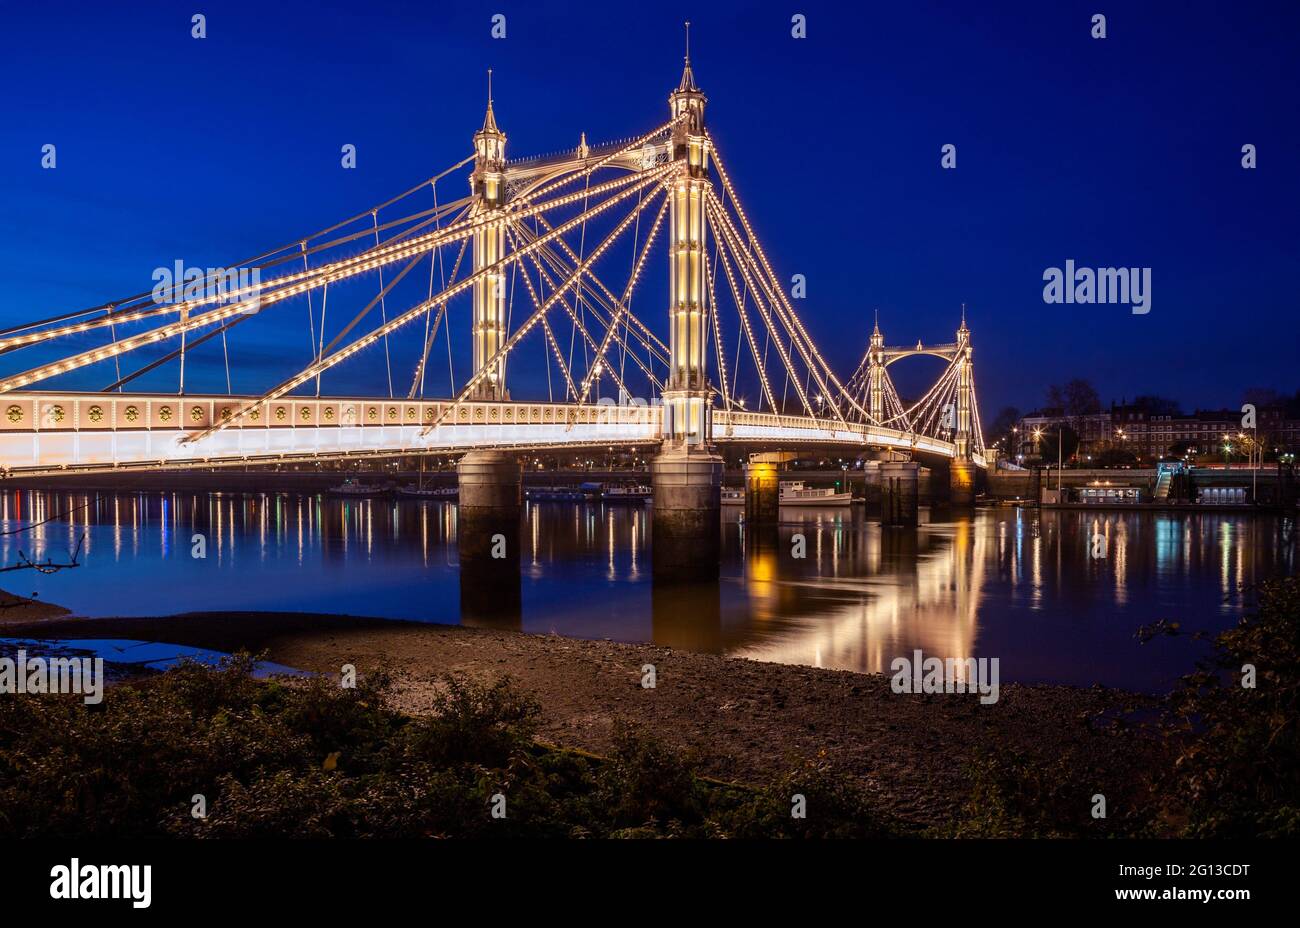 Reino Unido, Inglaterra, Londres, Battersea, Puente Albert cruzando el río Támesis por la noche. Foto de stock